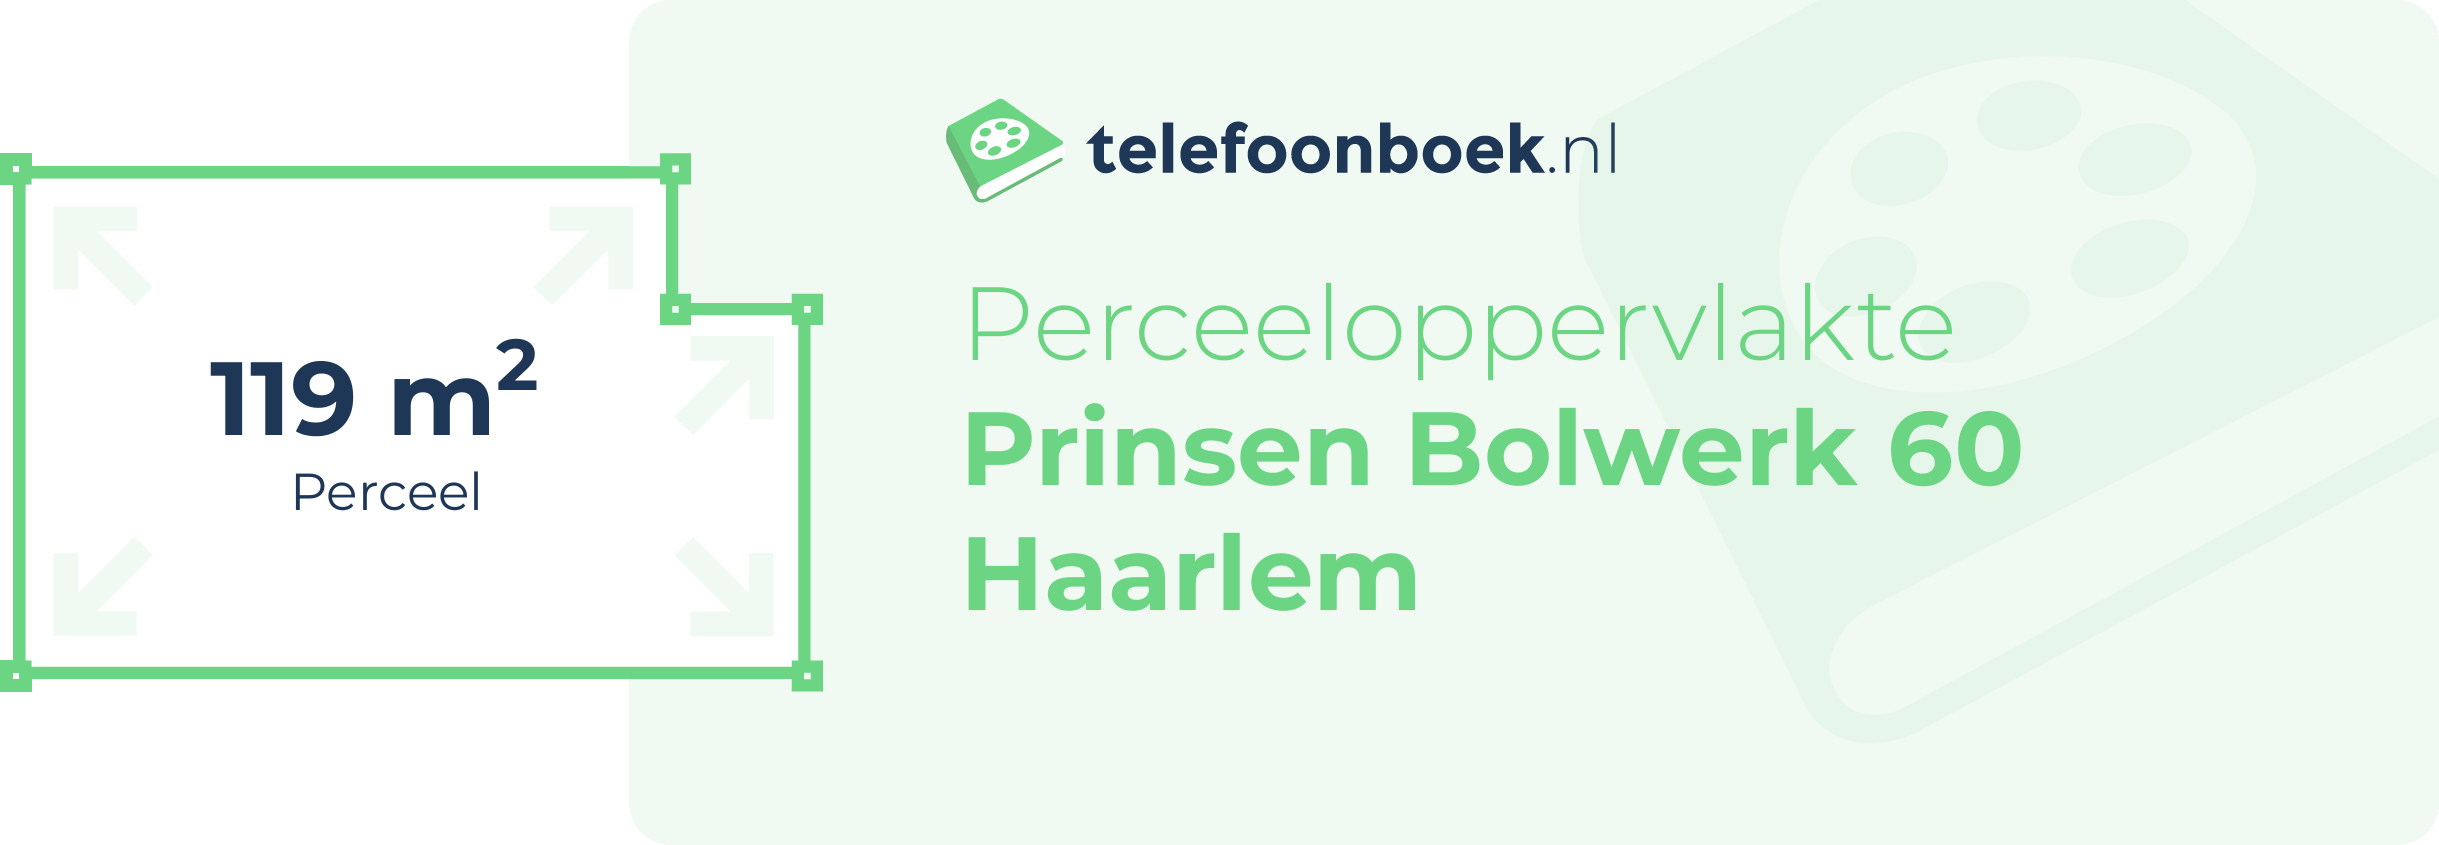 Perceeloppervlakte Prinsen Bolwerk 60 Haarlem